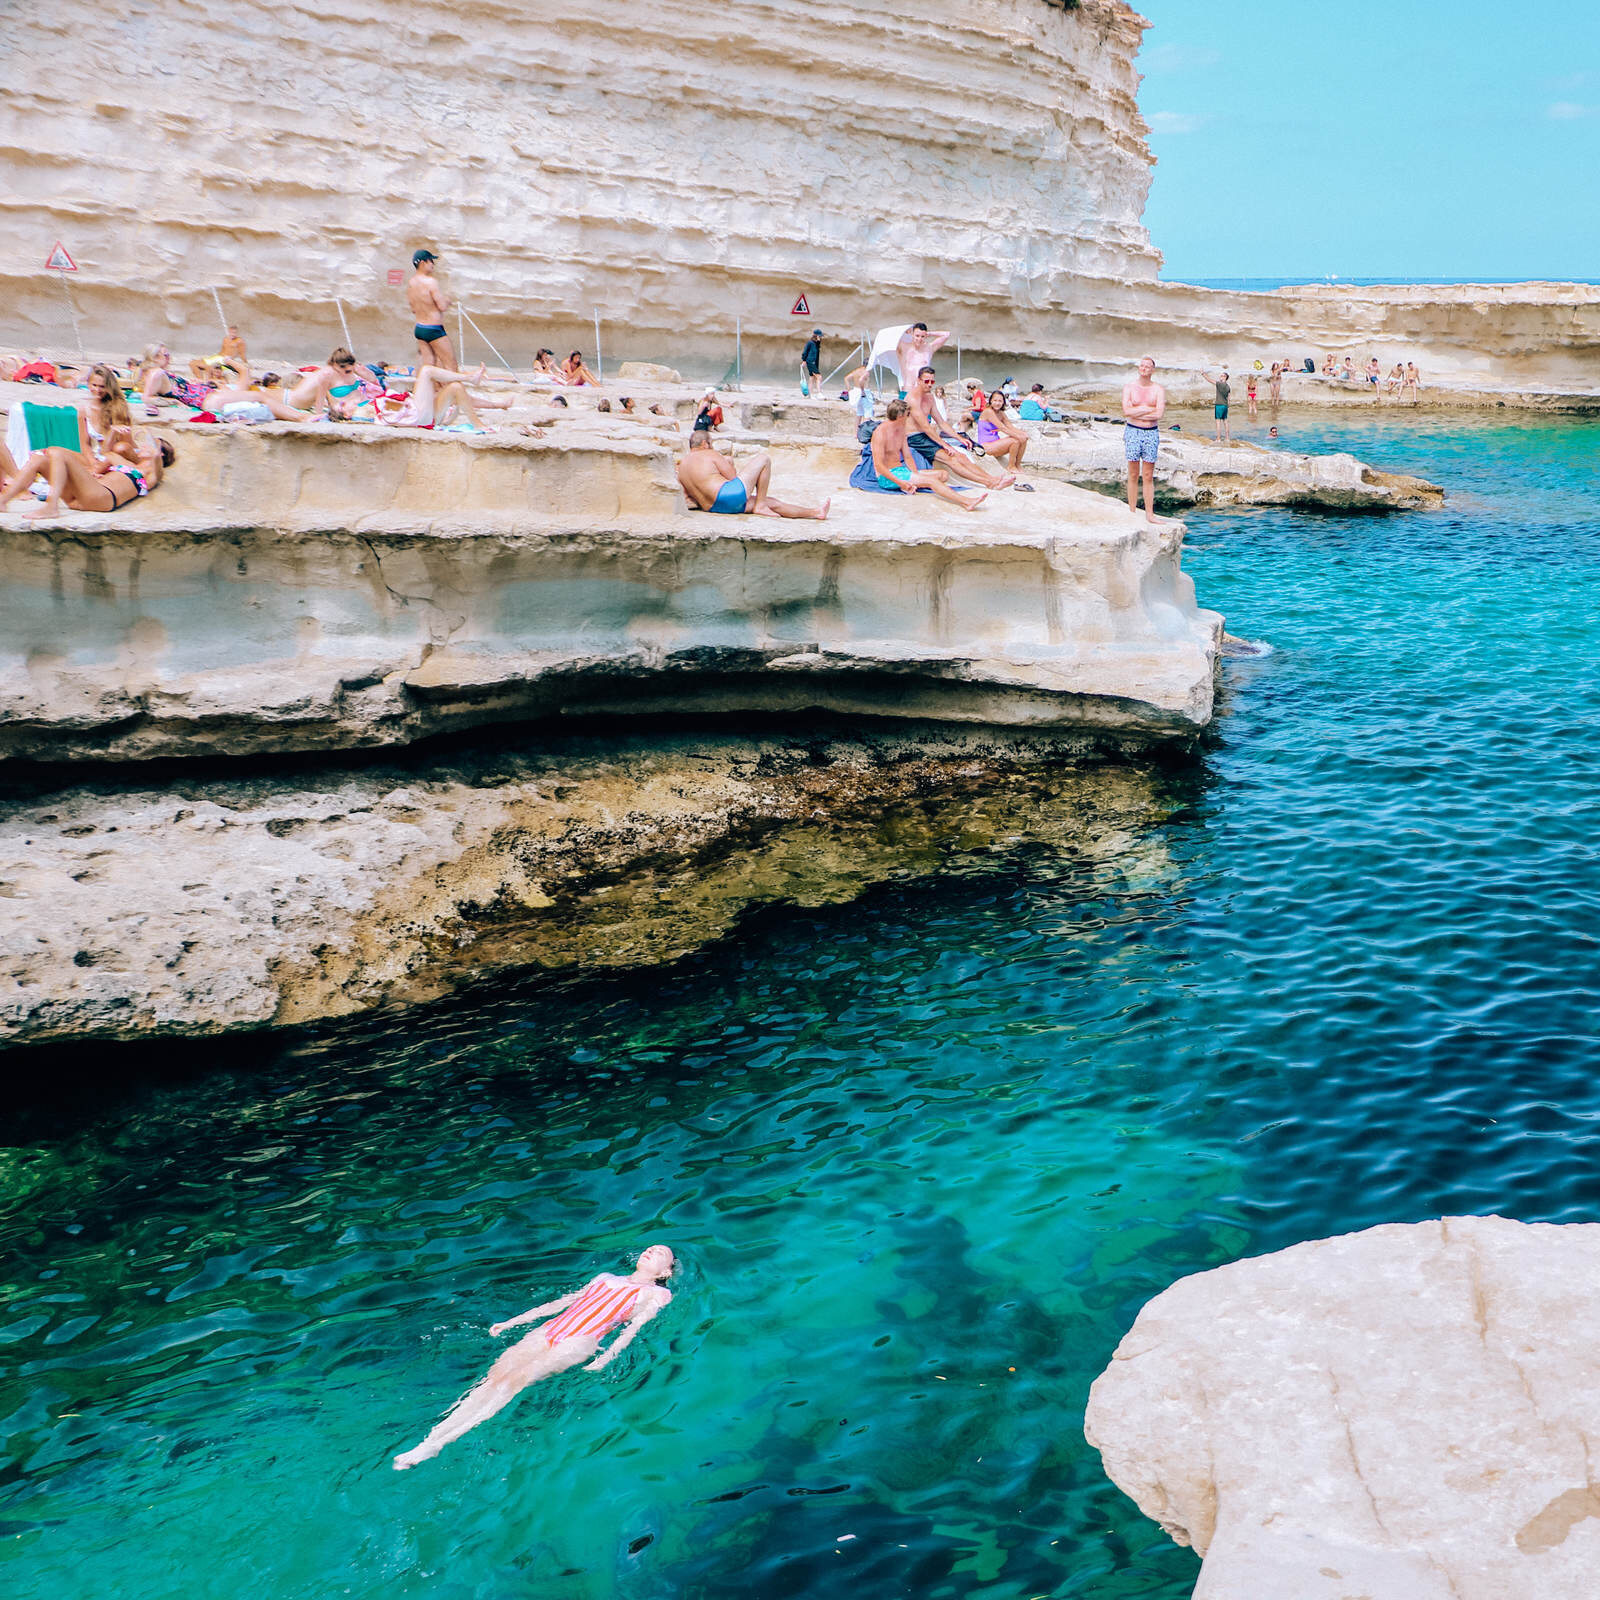 St Peter’s Pool, Malta